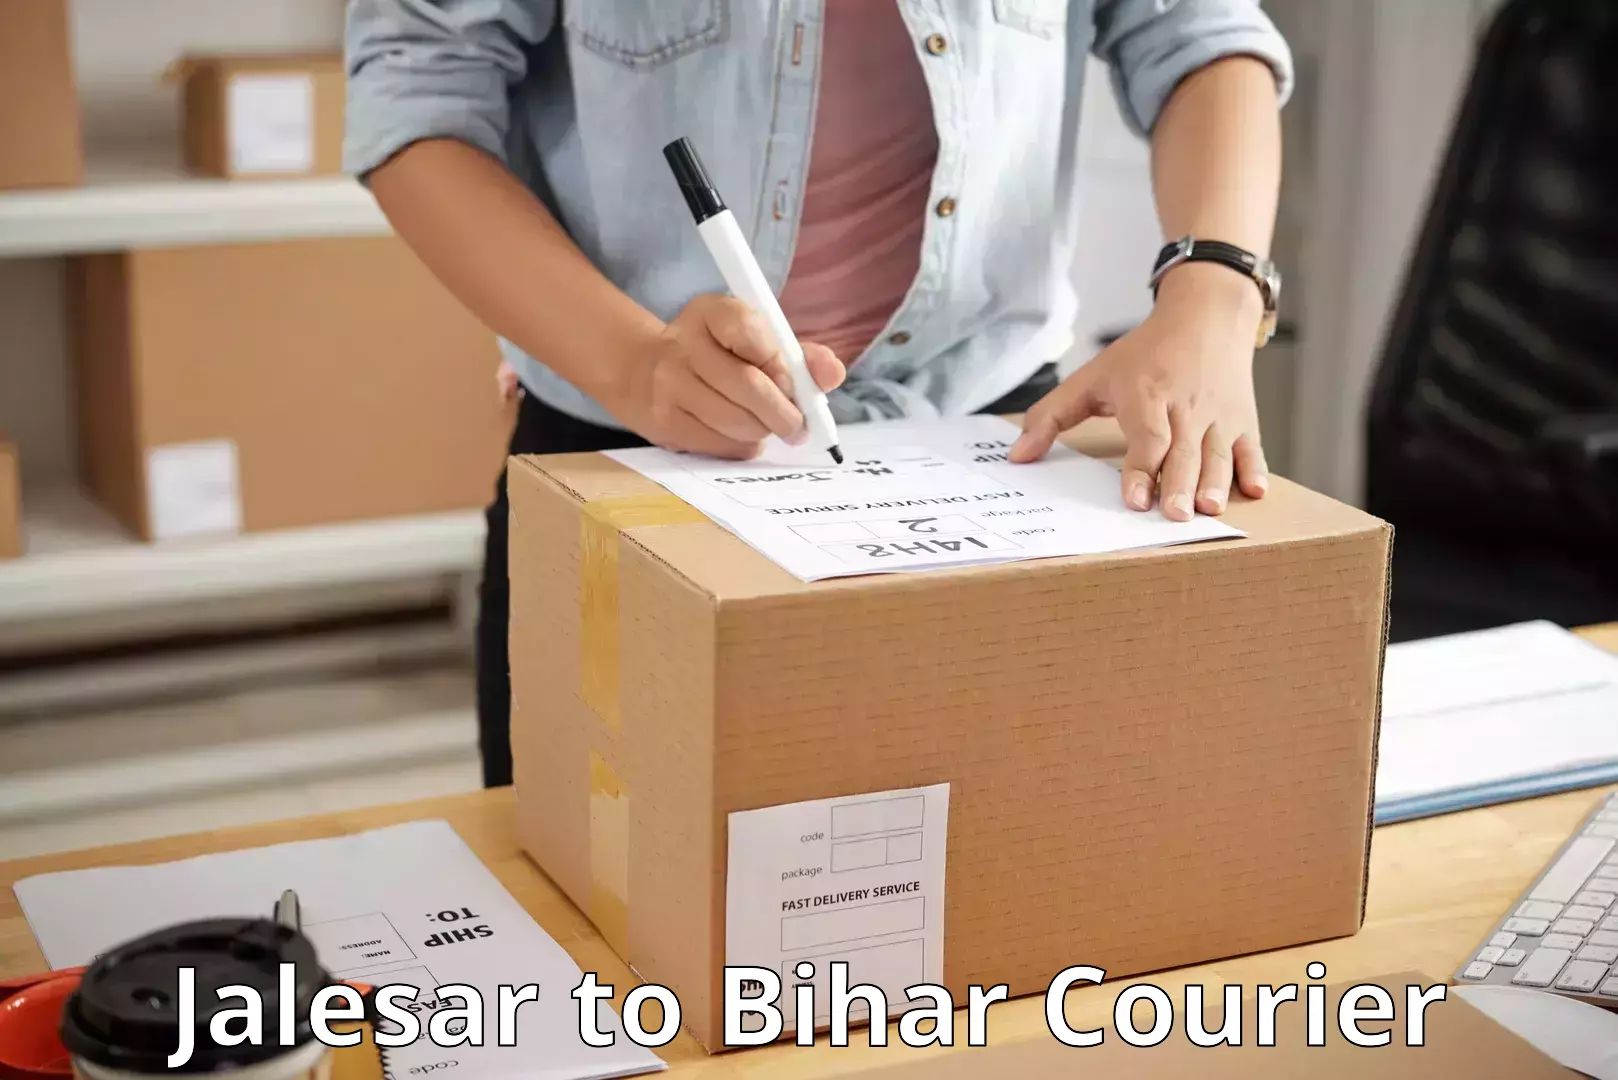 Affordable parcel service Jalesar to Bihta